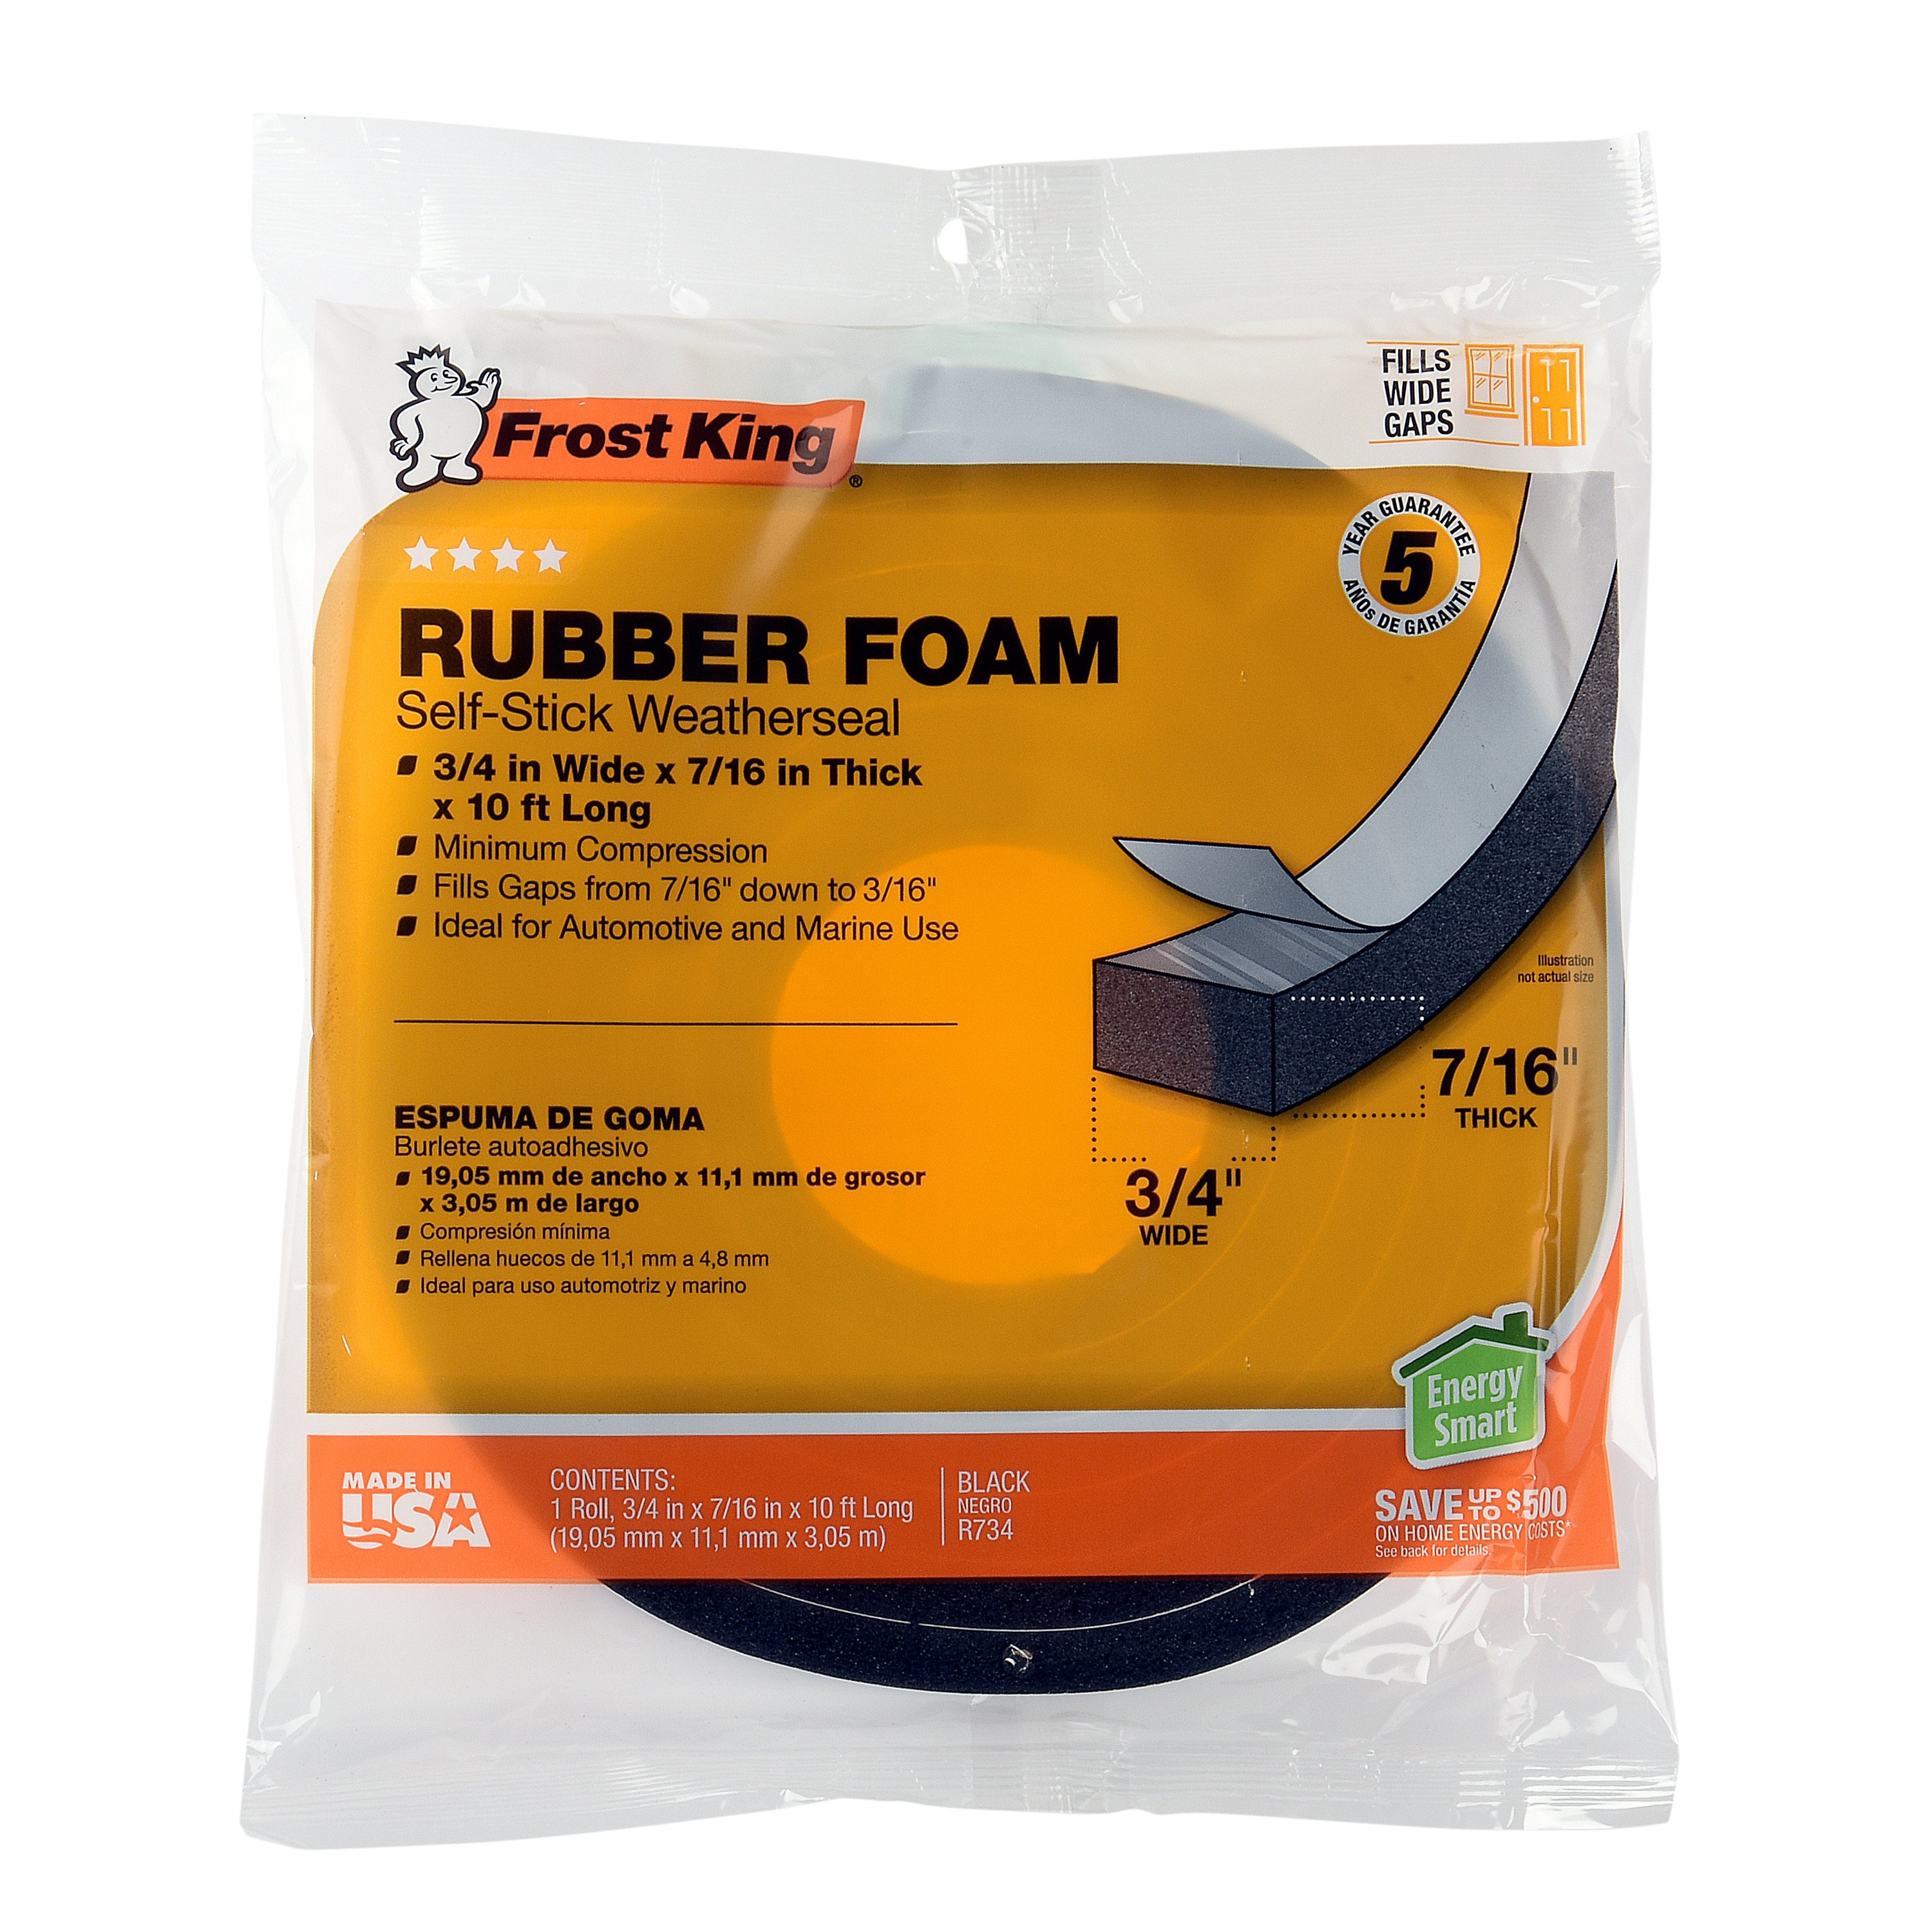 Frost King Sponge Rubber Foam Weatherseal - R734/8